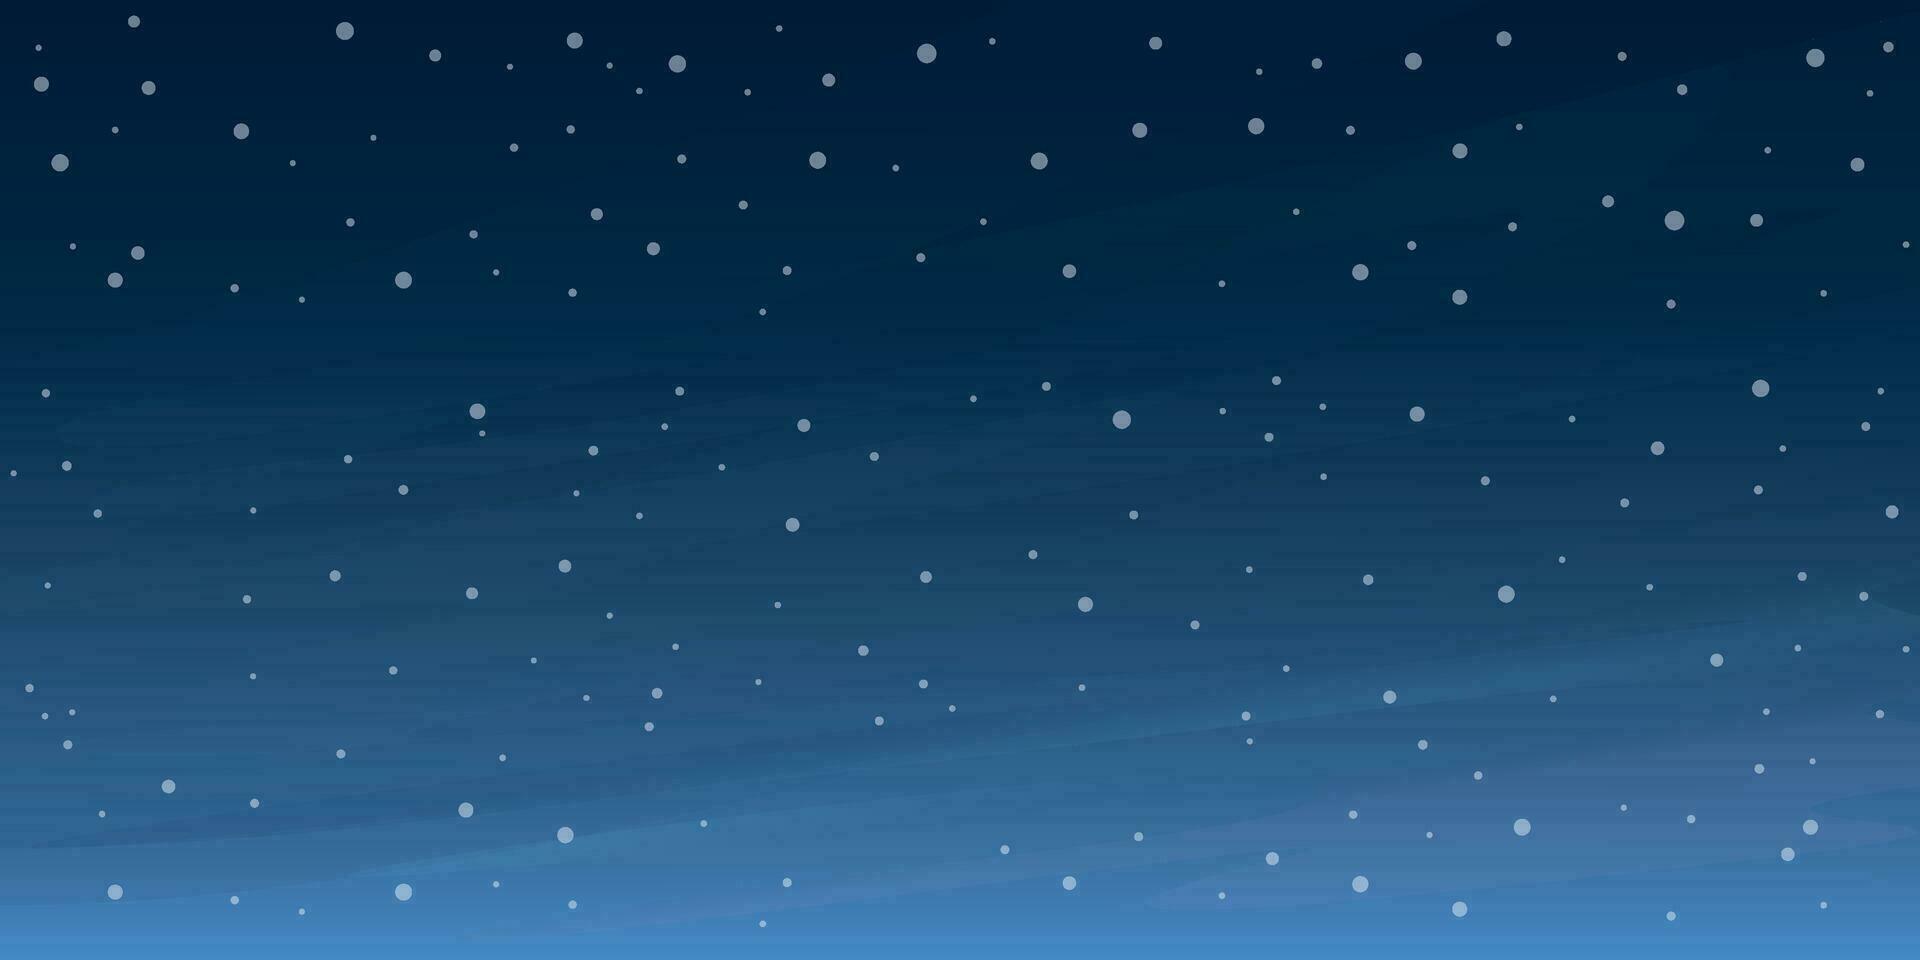 sneeuwval met nacht lucht achtergrond vector illustratie.